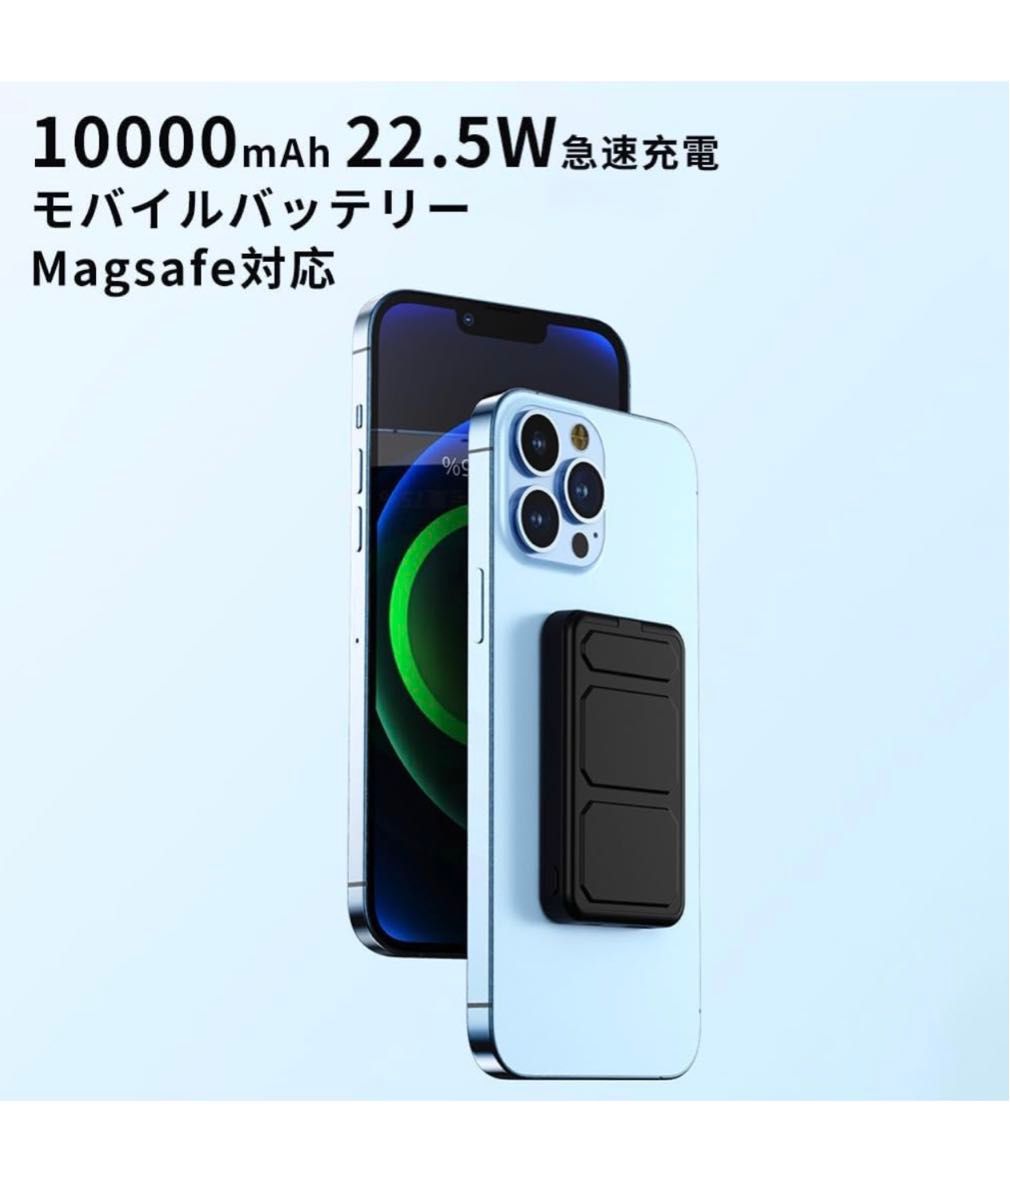 MagSafeモバイルバッテリー iphone 10000mAh 大容量 22.5W急速充電 ワイヤレス マグネット式